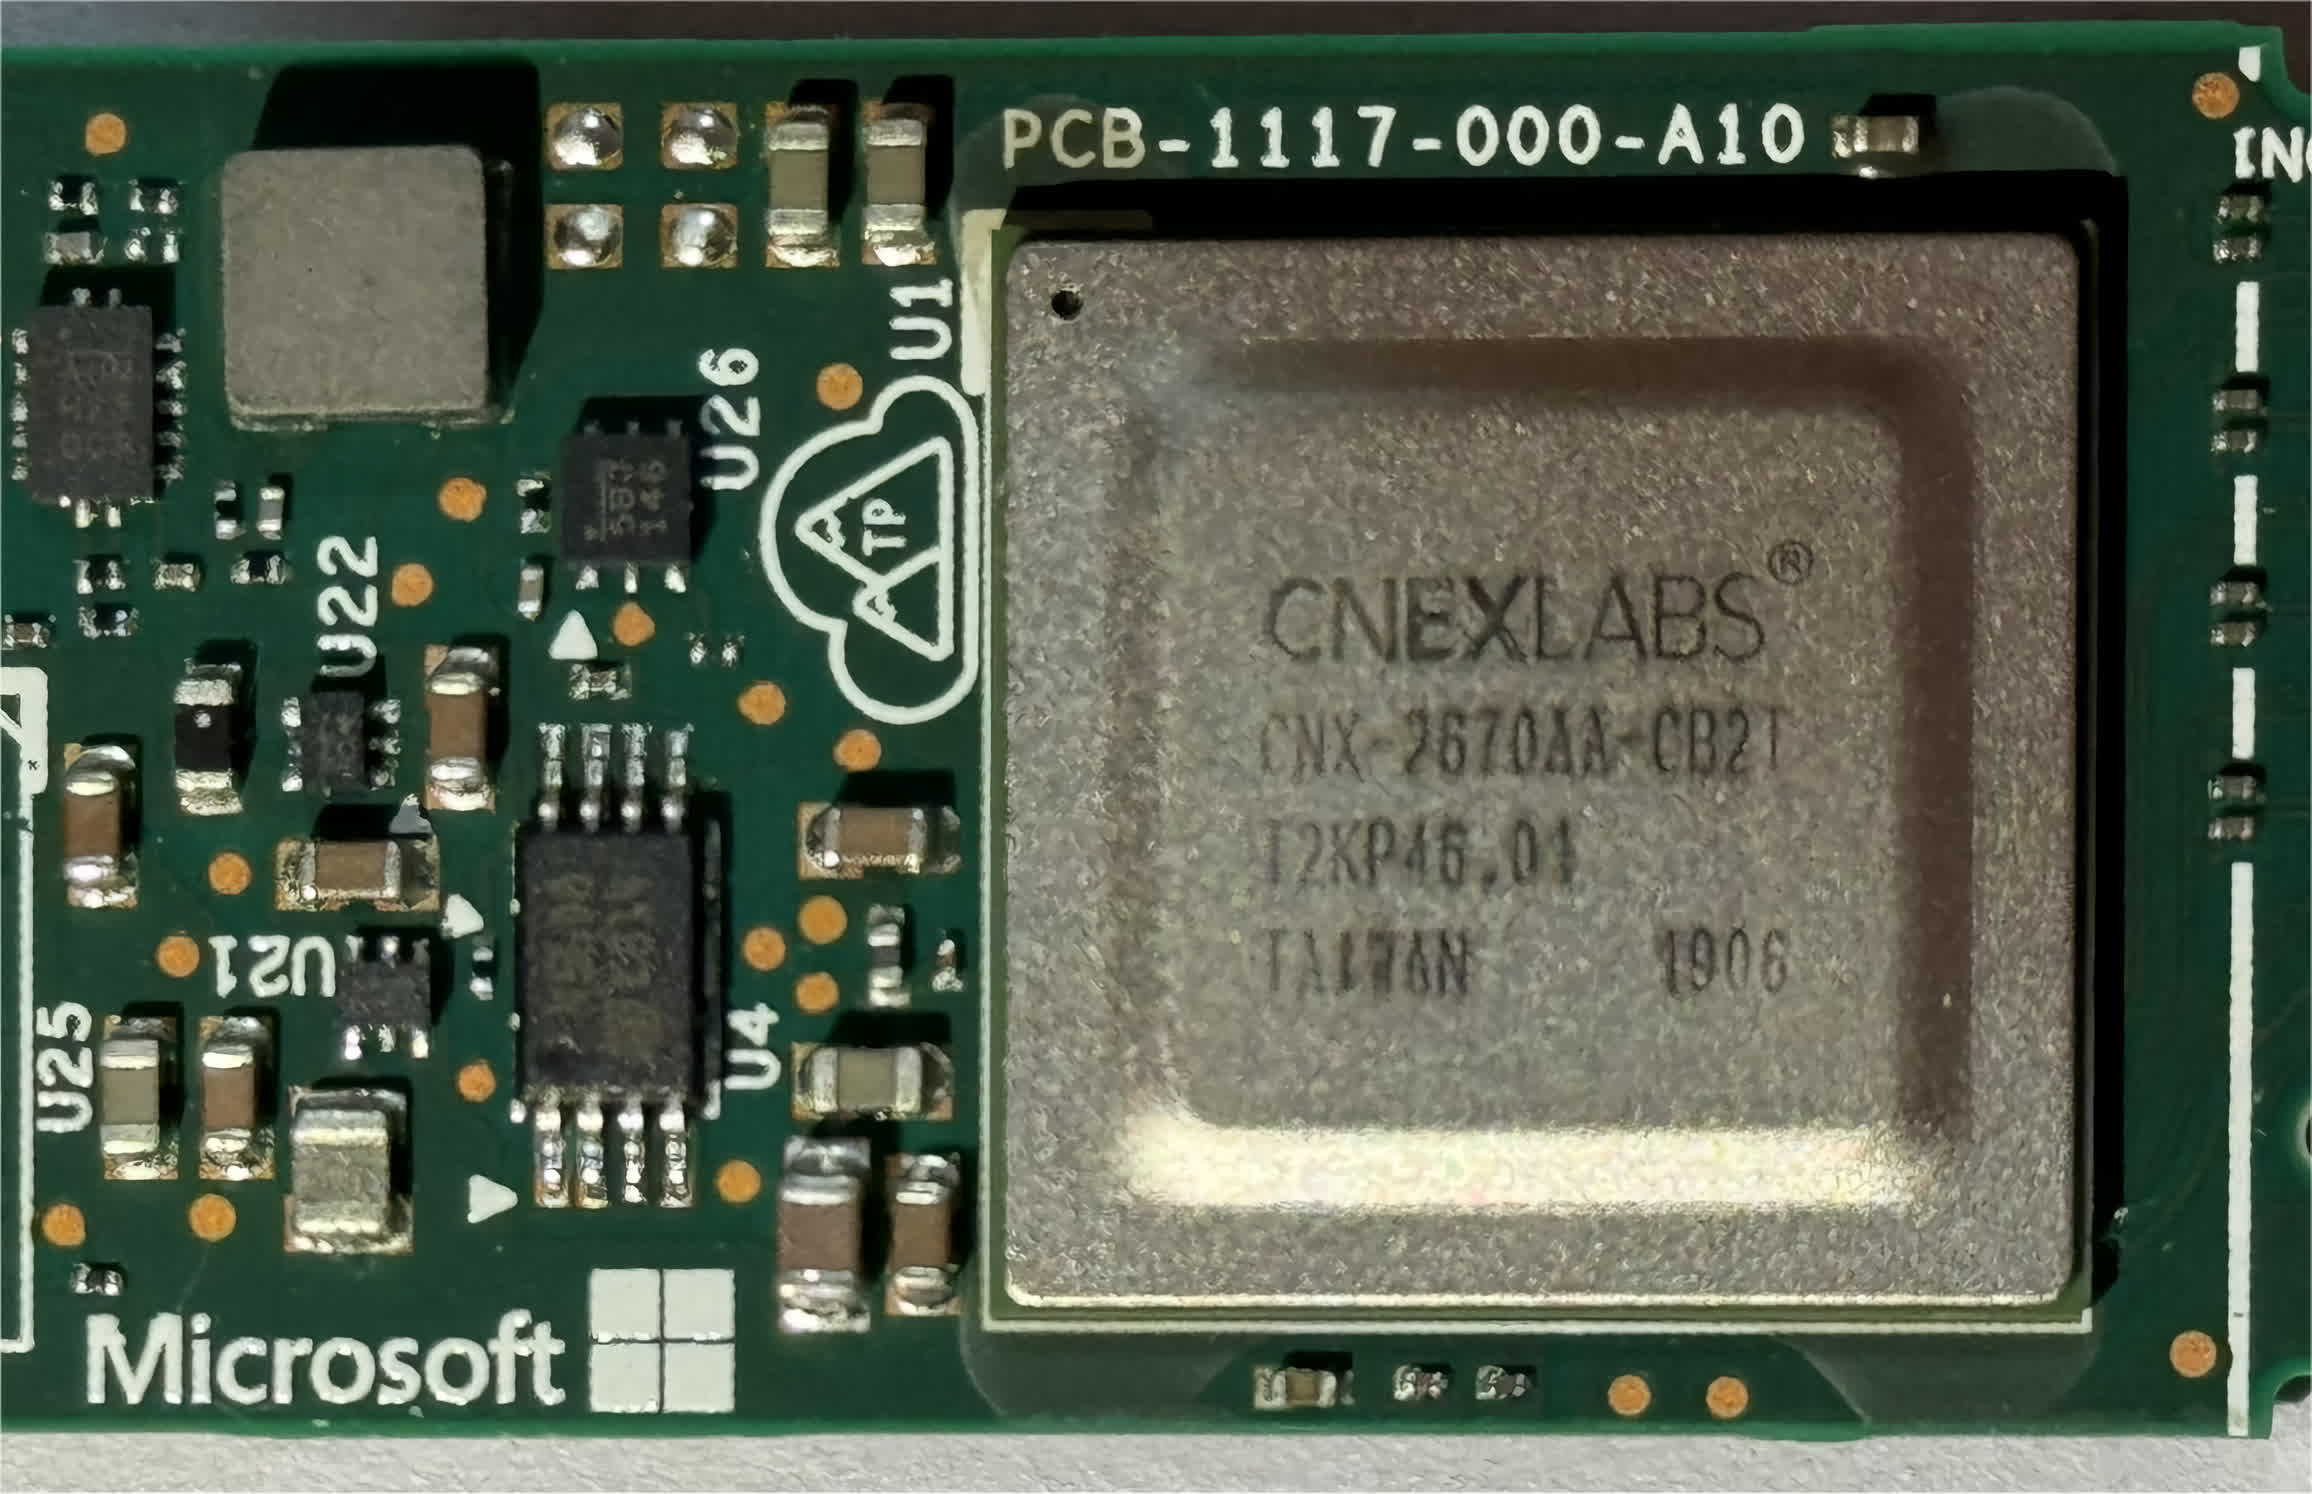 La muestra de ingeniería de SSD Microsoft Z1000 destaca la colaboración empresarial con CNEX Labs